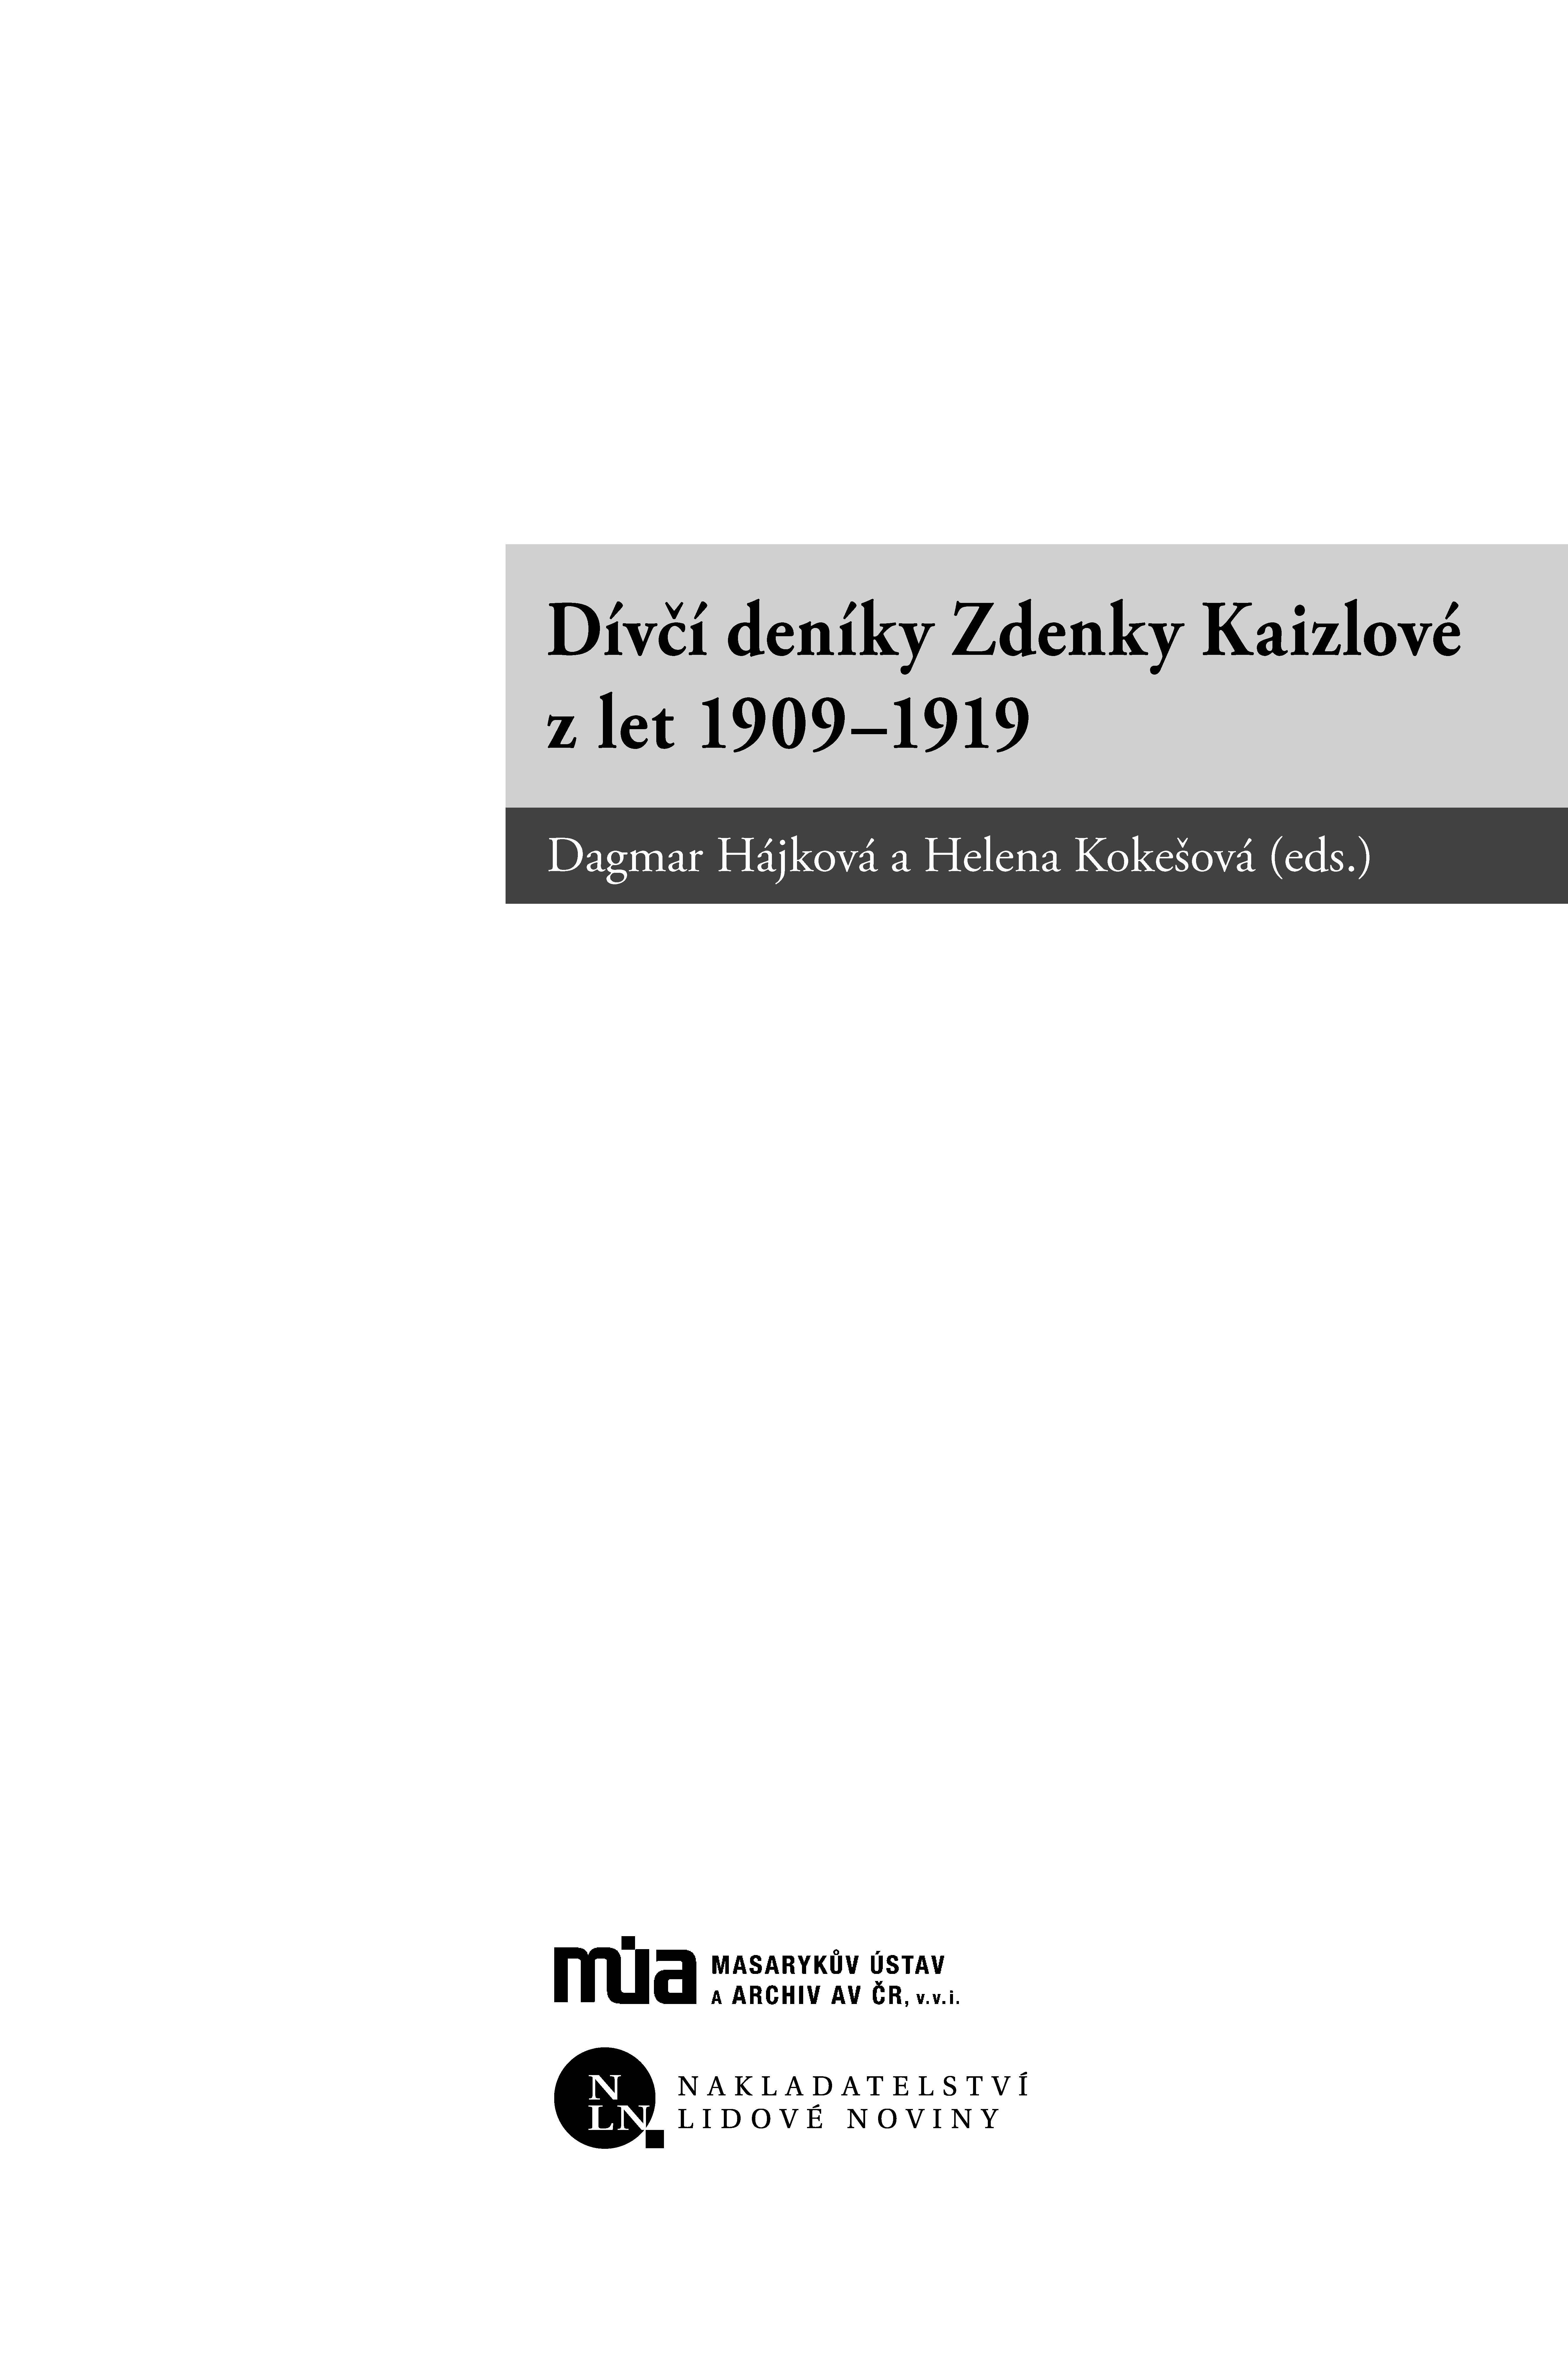 Dívčí deníky Zdenky Kaizlové z let 1909–1919 ukázka-1